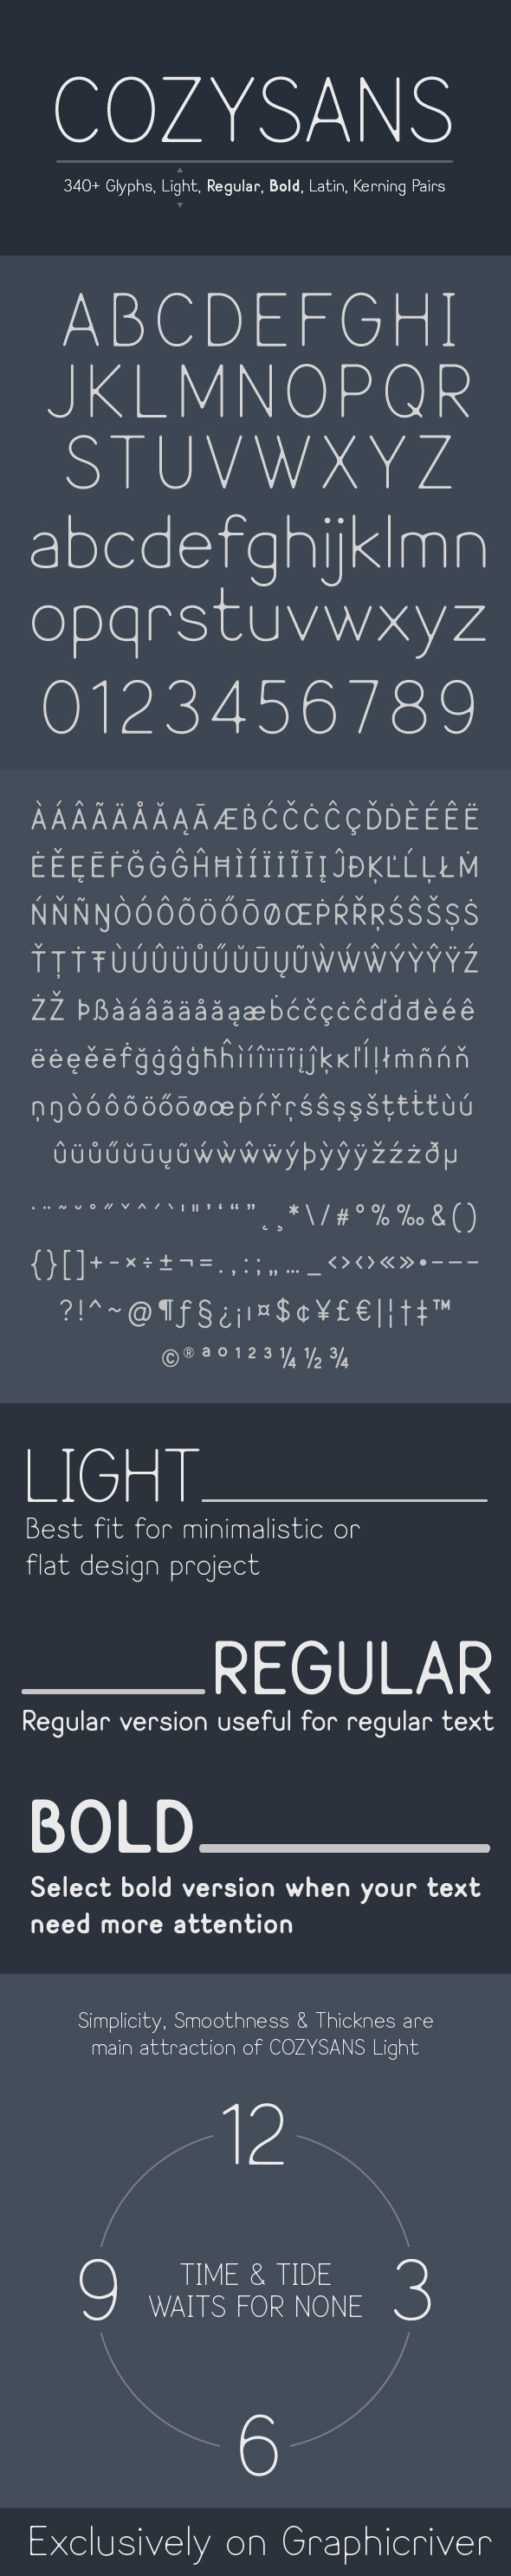 Cozysans Typeface